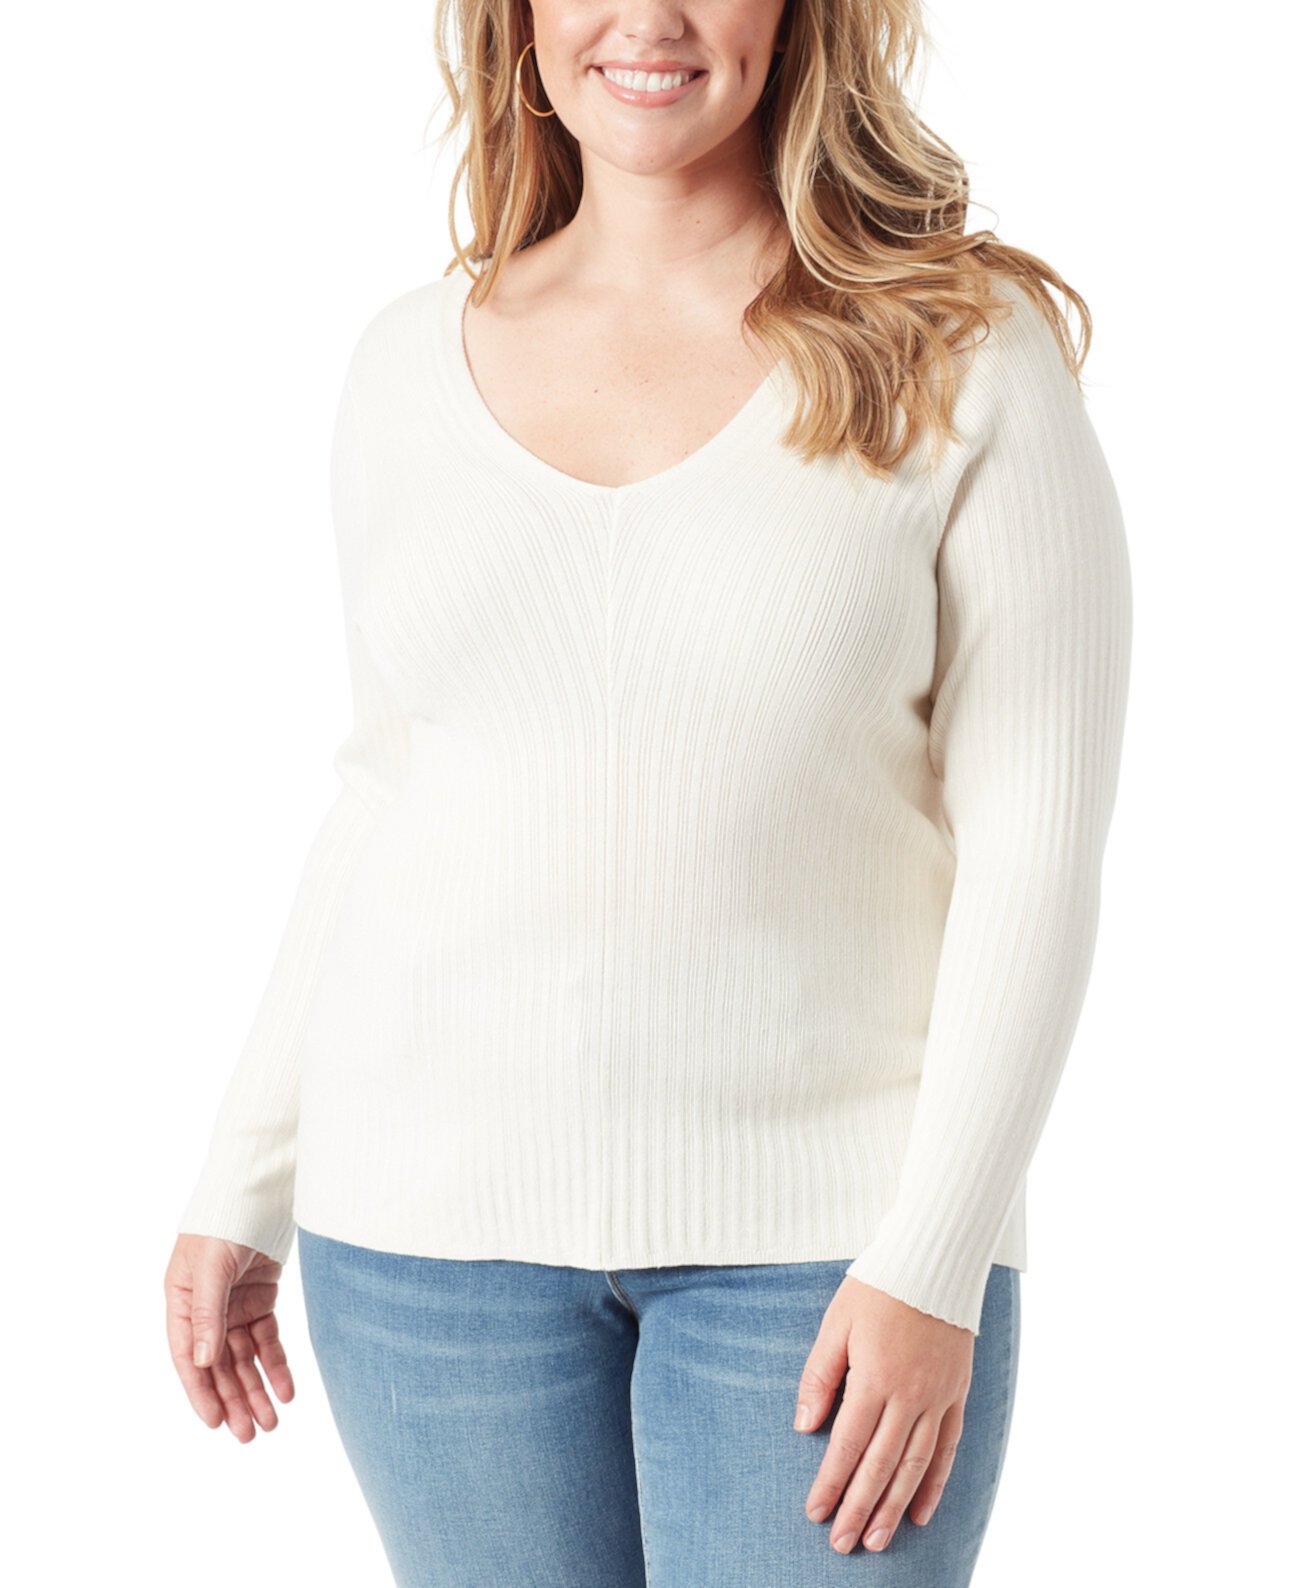 Модный свитер больших размеров в рубчик Prescilla Jessica Simpson